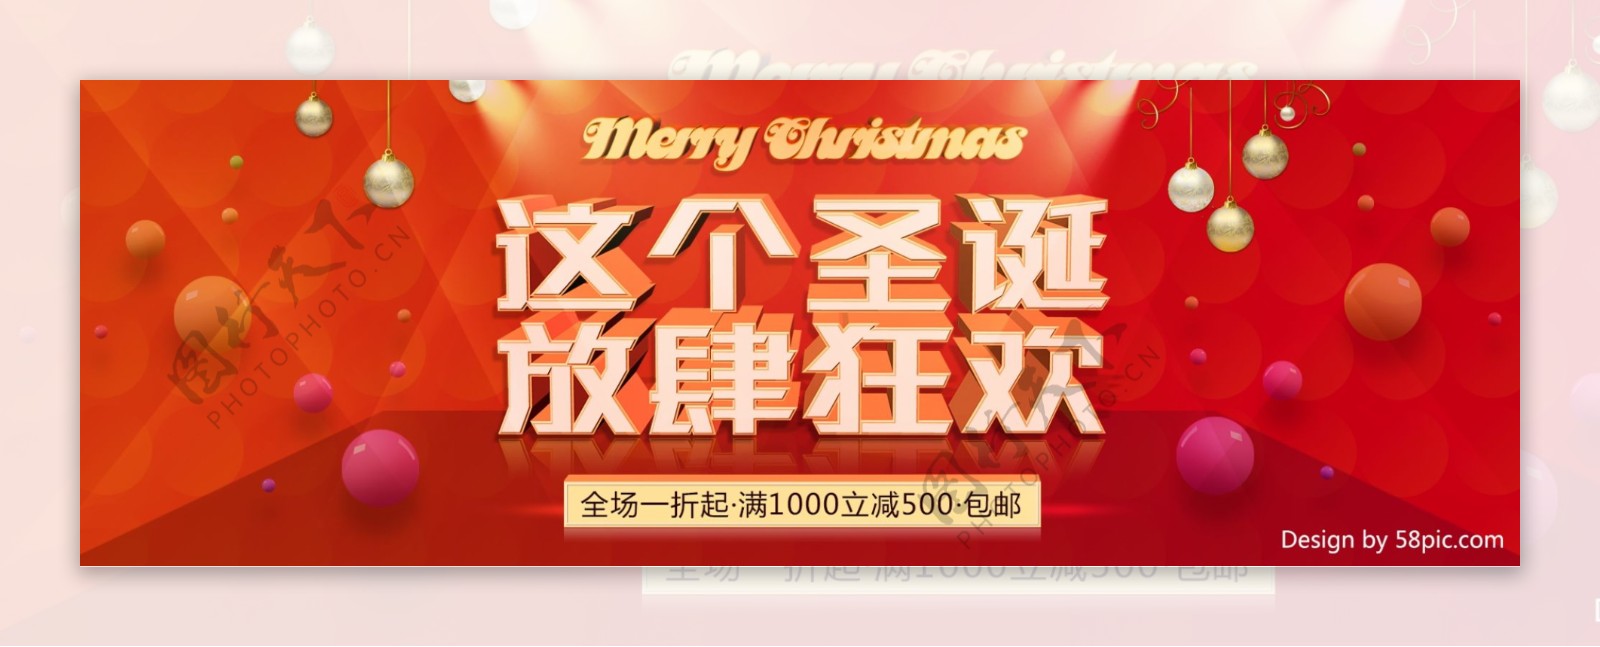 圣诞狂欢红色大气圣诞节促销海报banner